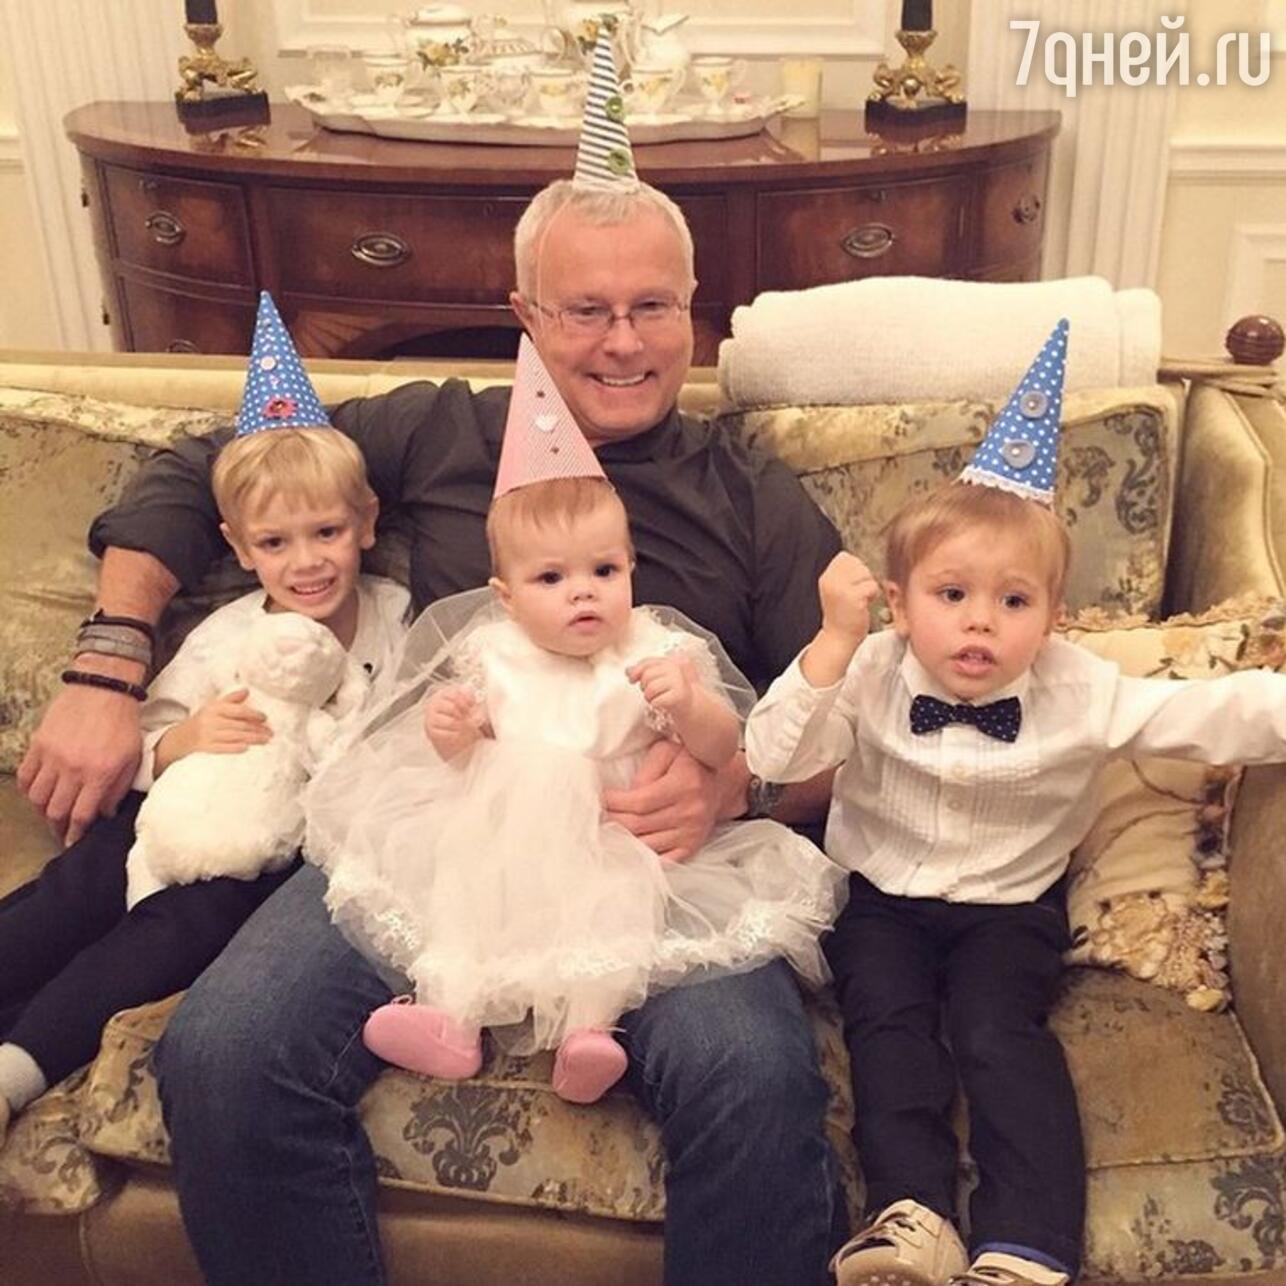 Александр Лебедев с детьми Никитой, Егором и Ариной